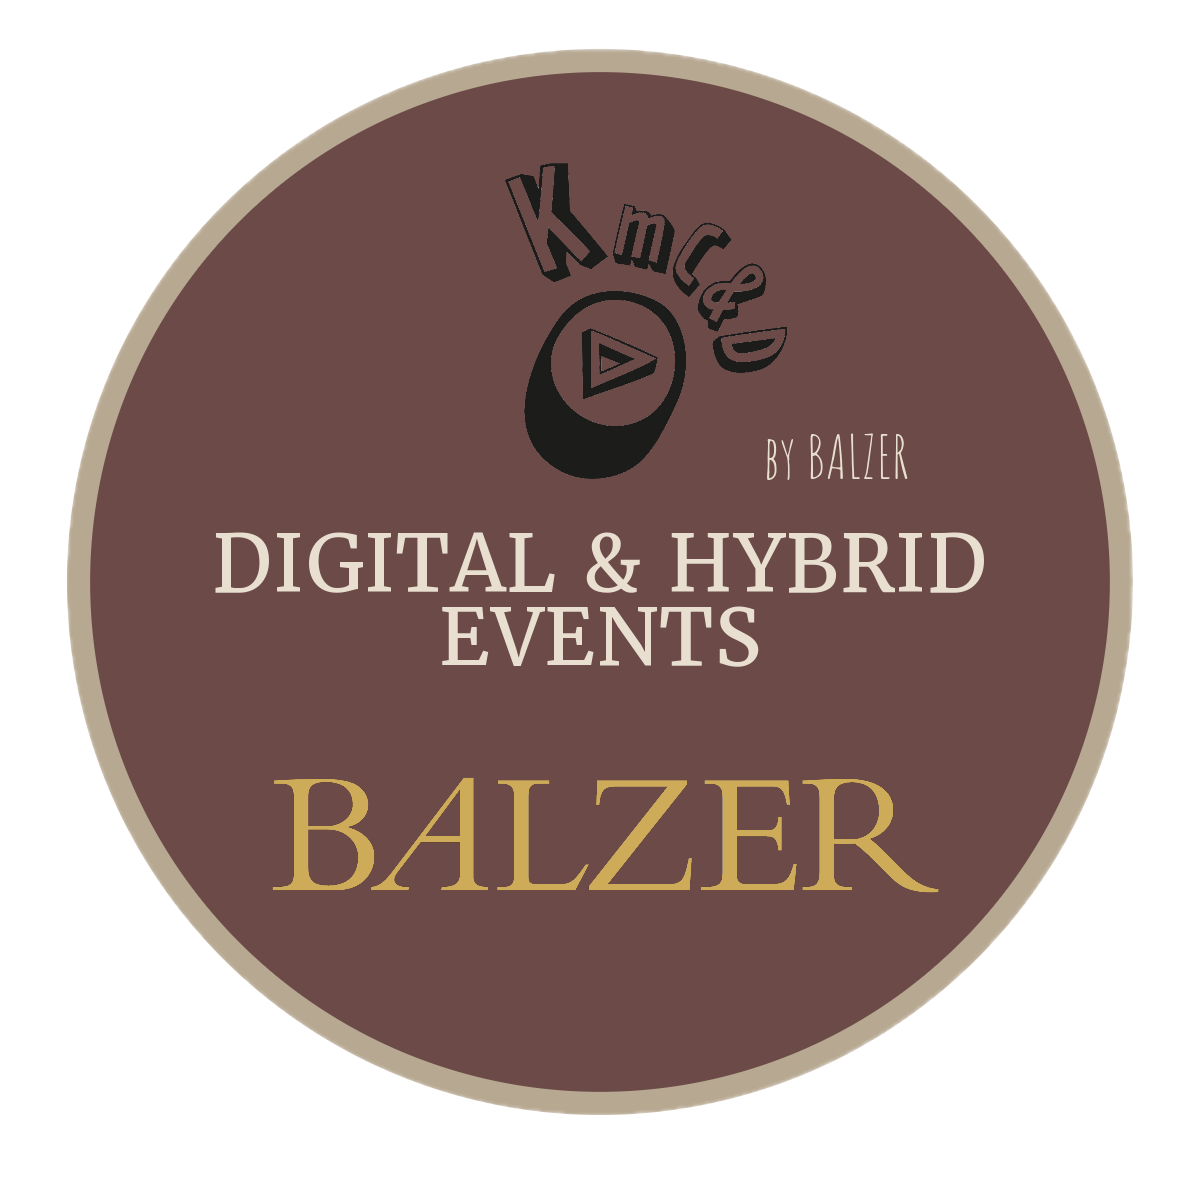 BALZER-Signet-Digitale-und-Hybride-Events